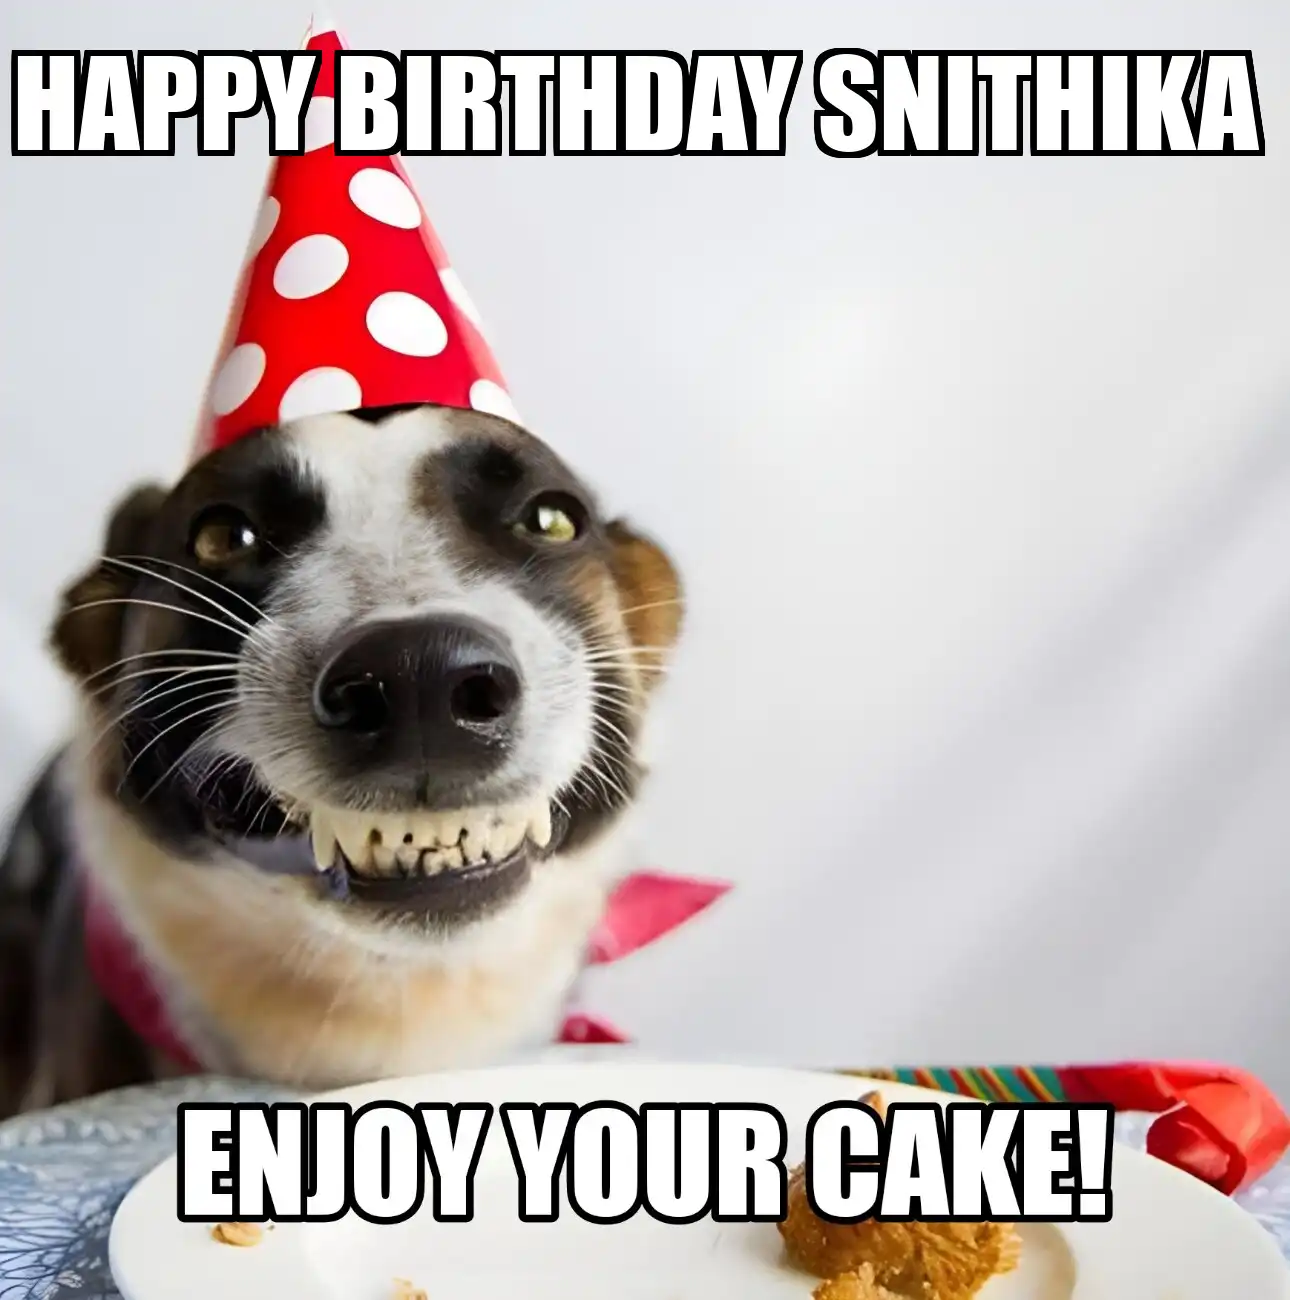 Happy Birthday Snithika Enjoy Your Cake Dog Meme